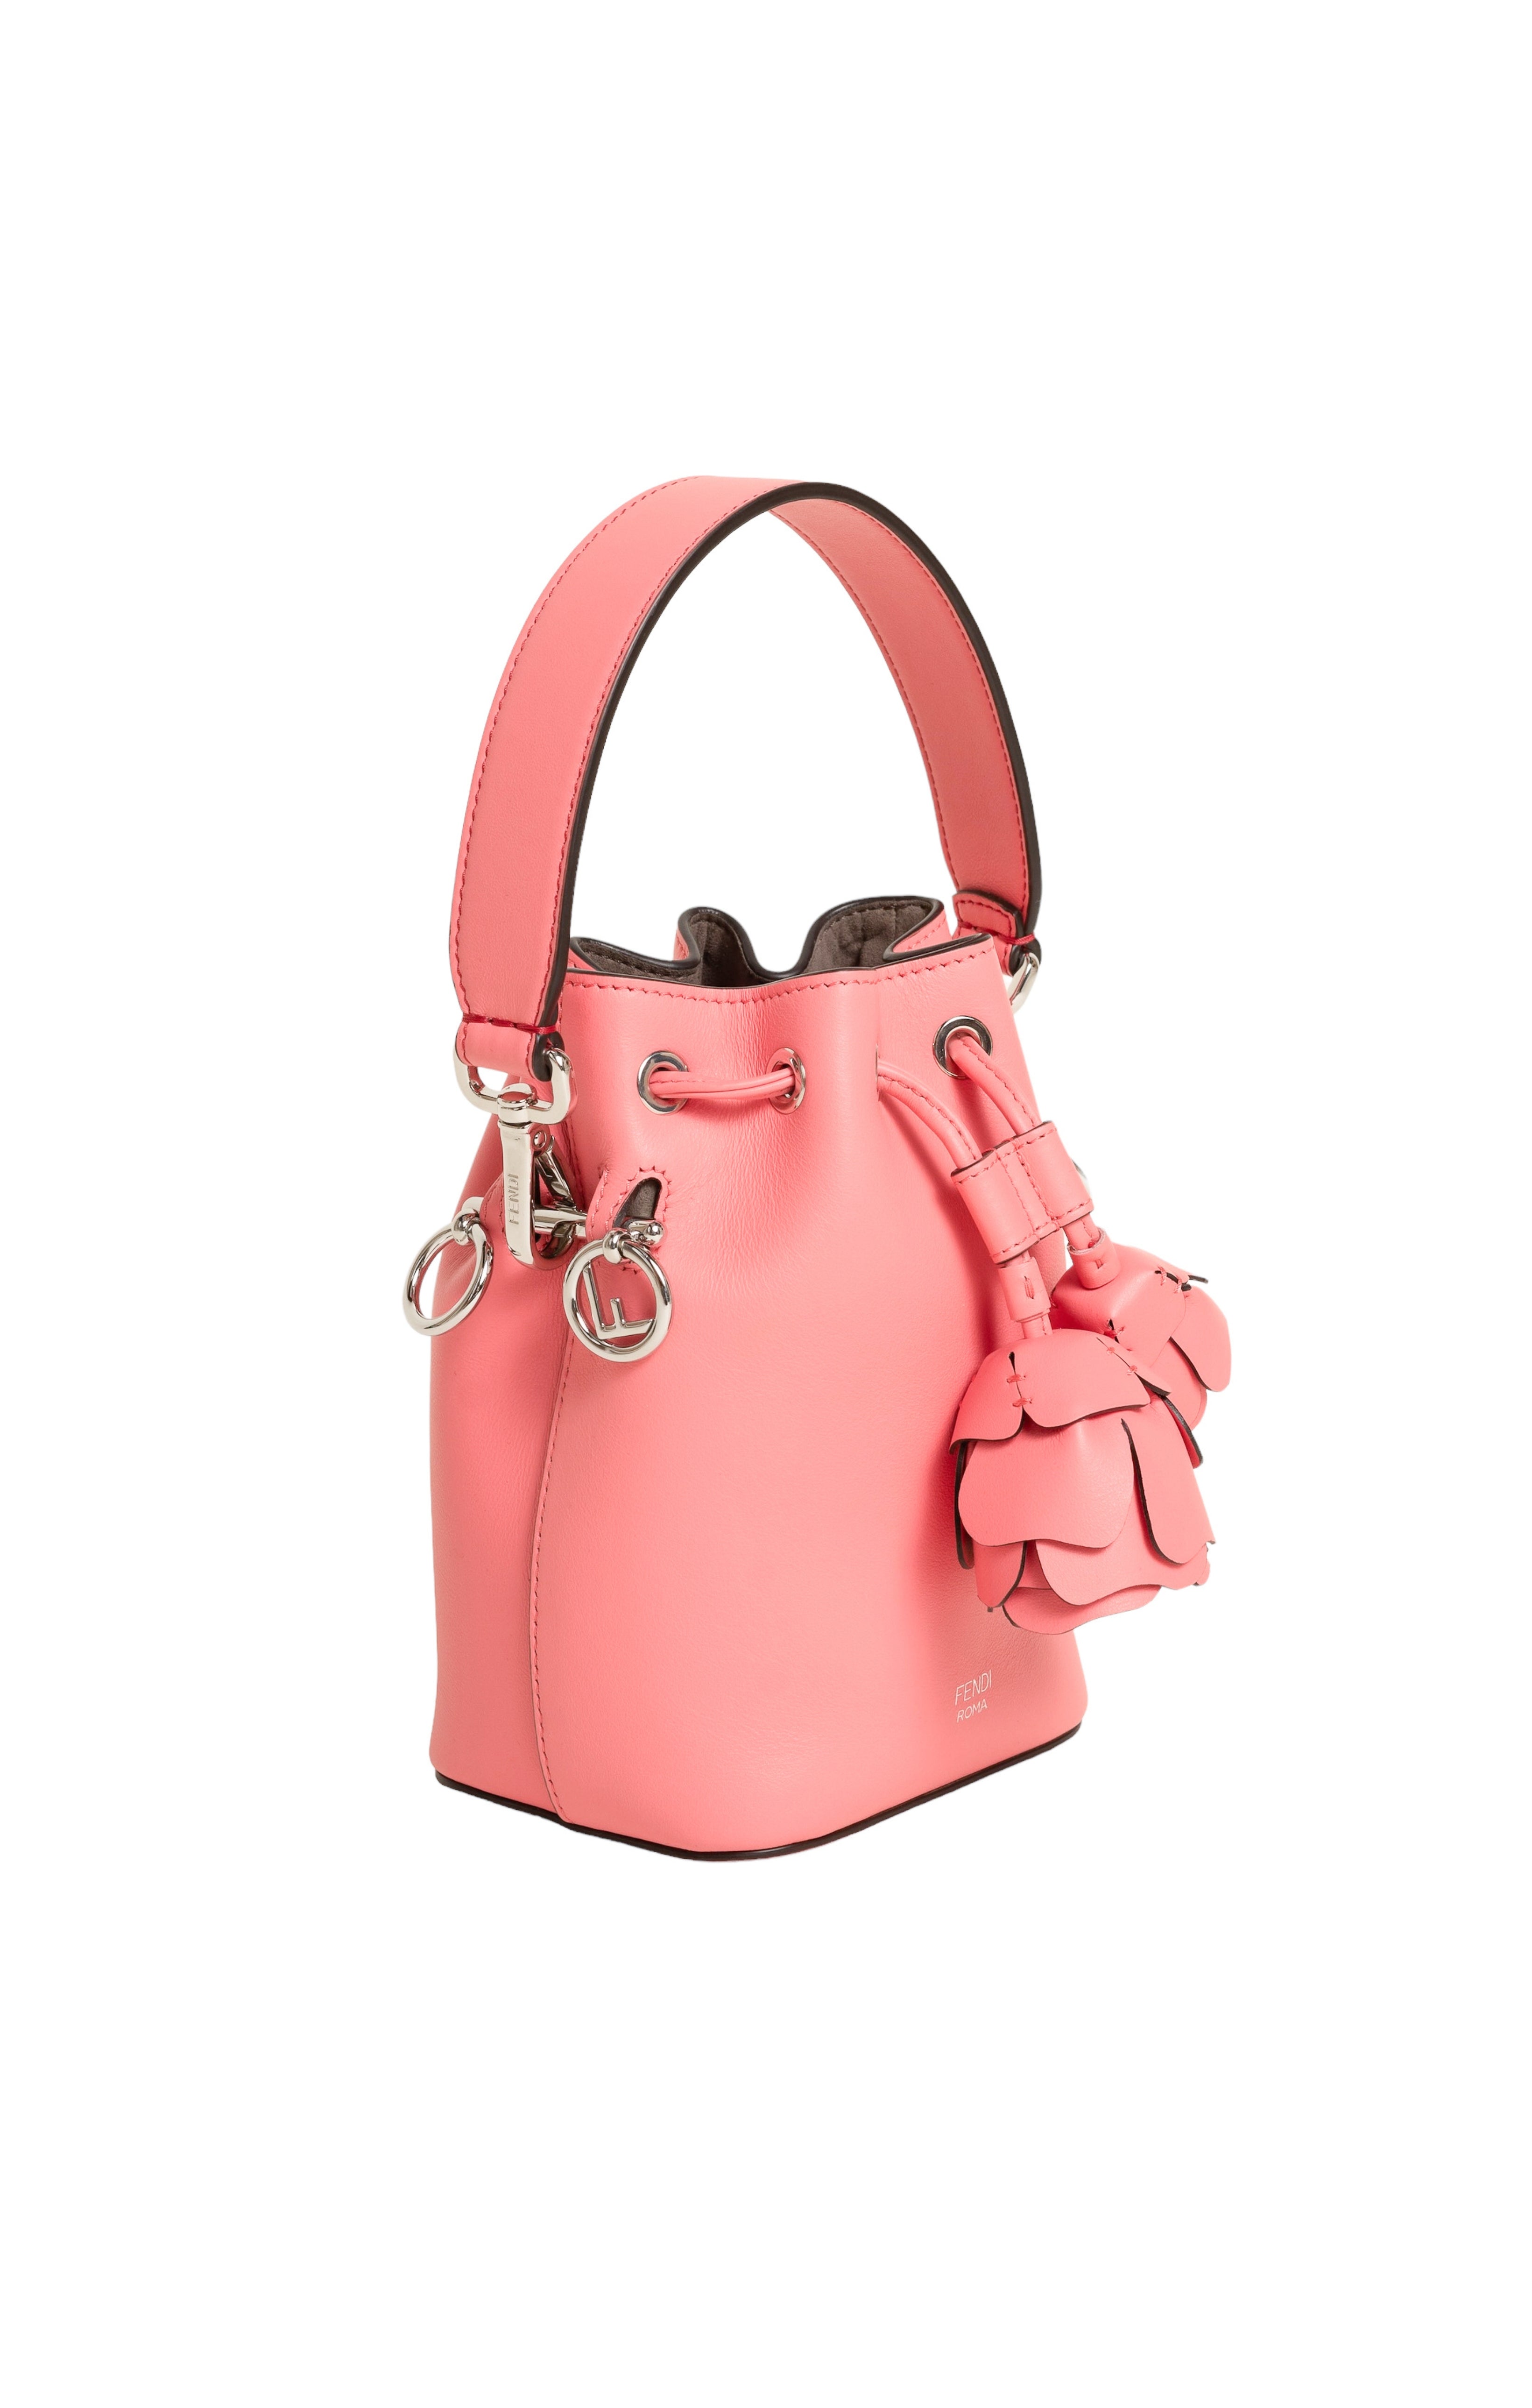 FENDI (RARE) Bag Size: 4.75" x 4" x 7"; 4.75" drop handle